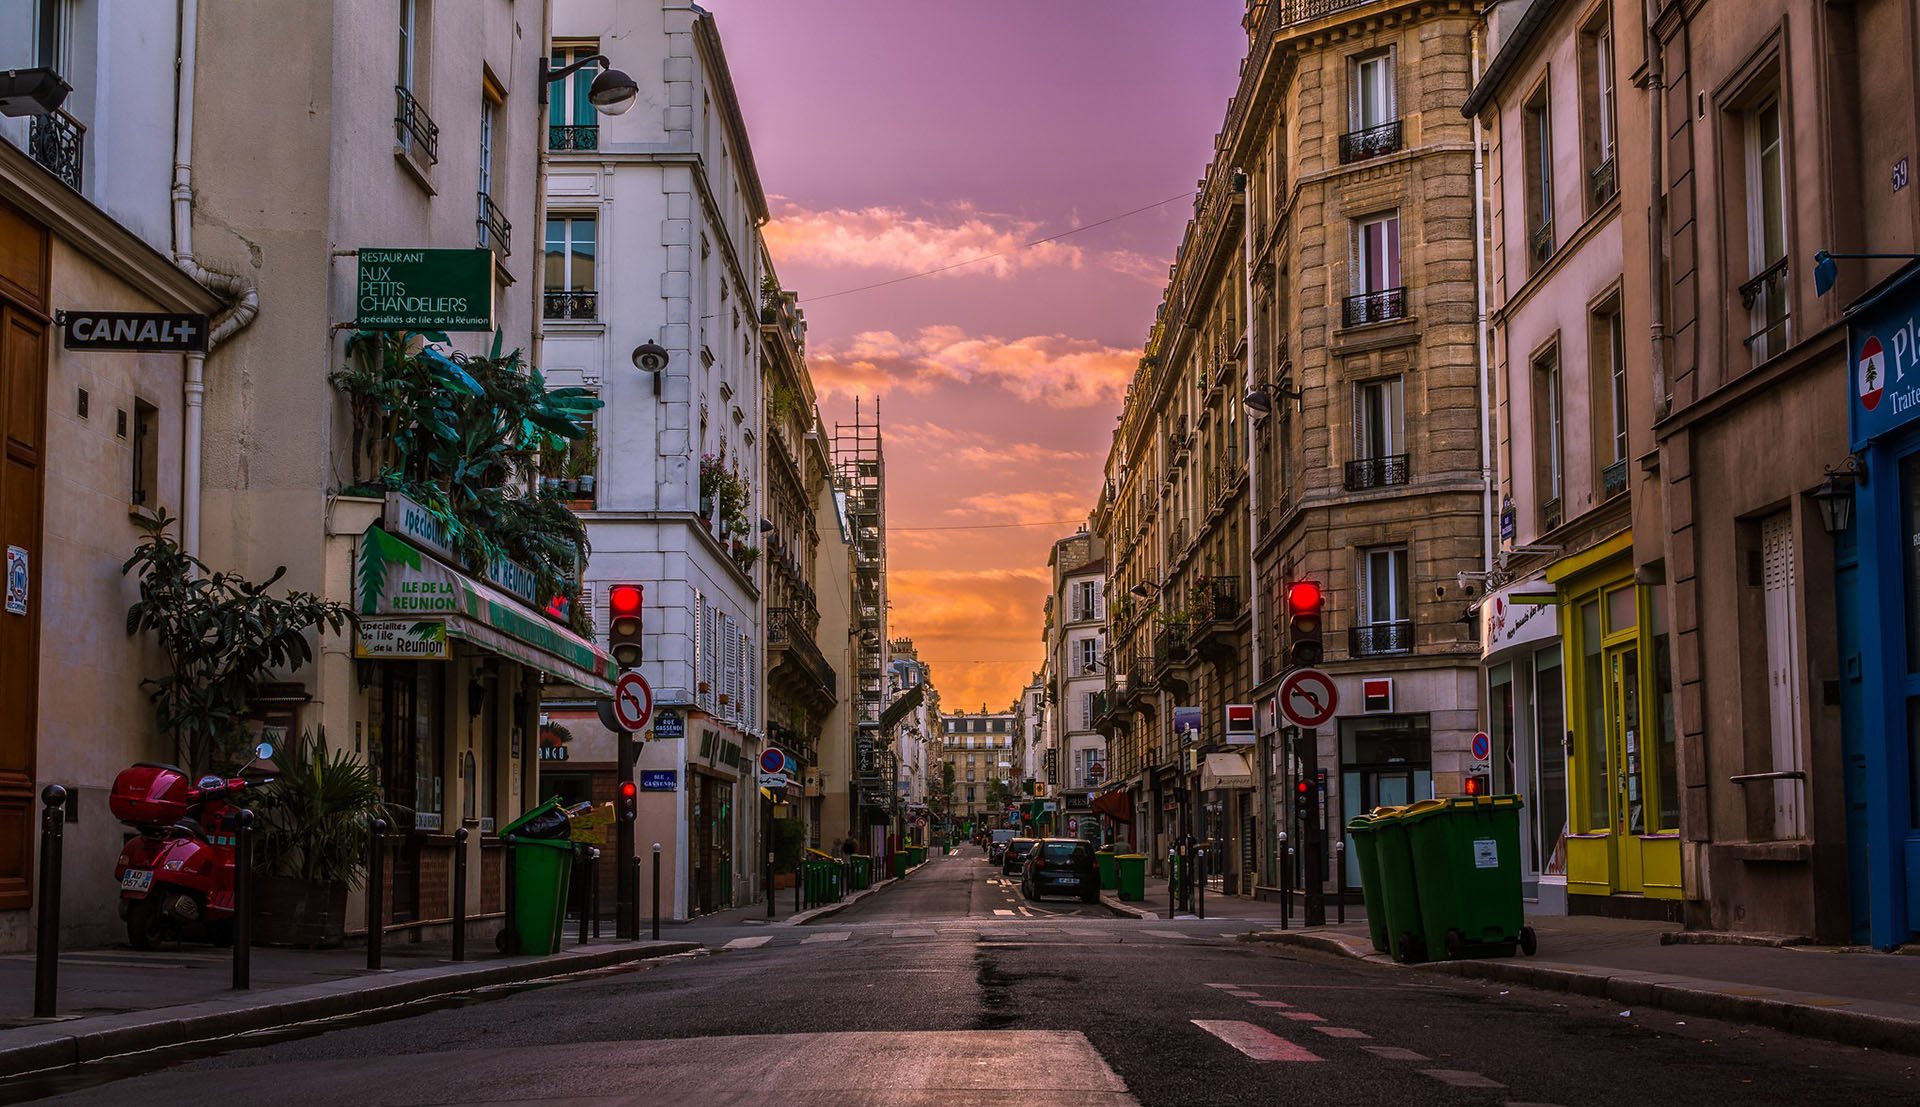 фотографии улиц парижа